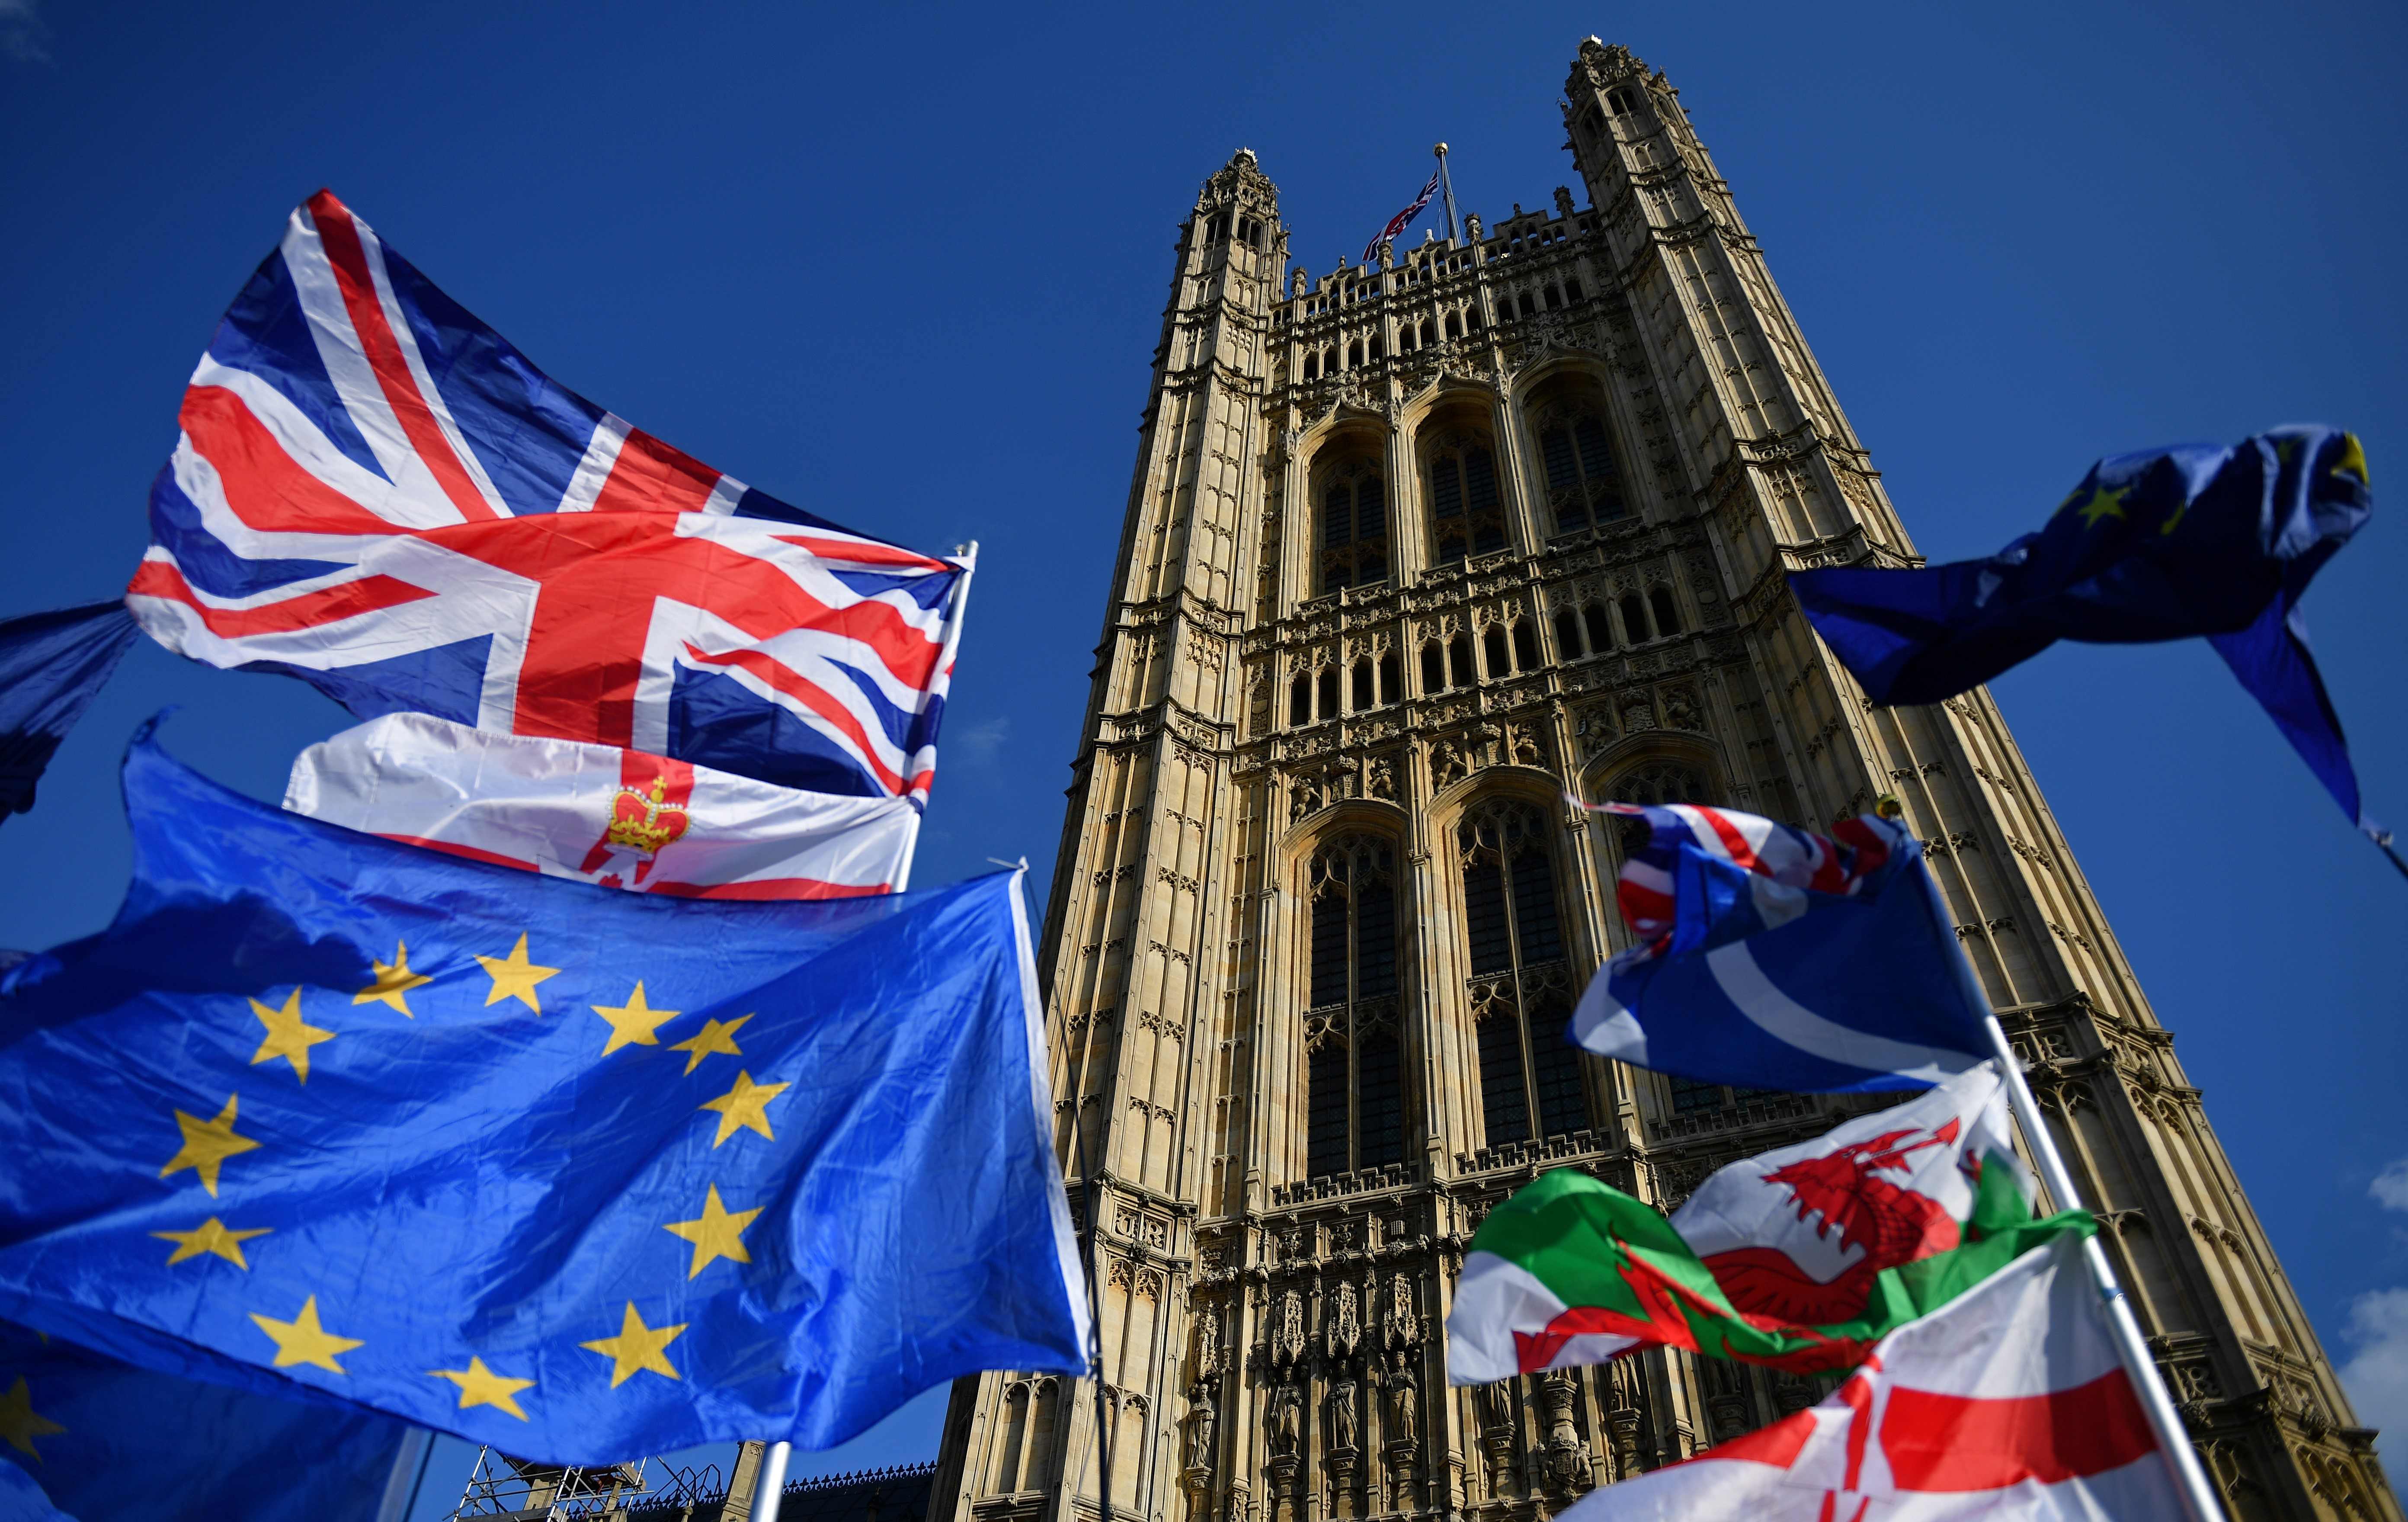 Las banderas pertenecientes a activistas anti-Brexit y pro-Brexit vuelan fuera de las Casas del Parlamento en Londres cuando los parlamentarios comienzan a debatir la segunda lectura del proyecto de ley de Acuerdo de Retirada. (Foto Prensa Libre AFP)